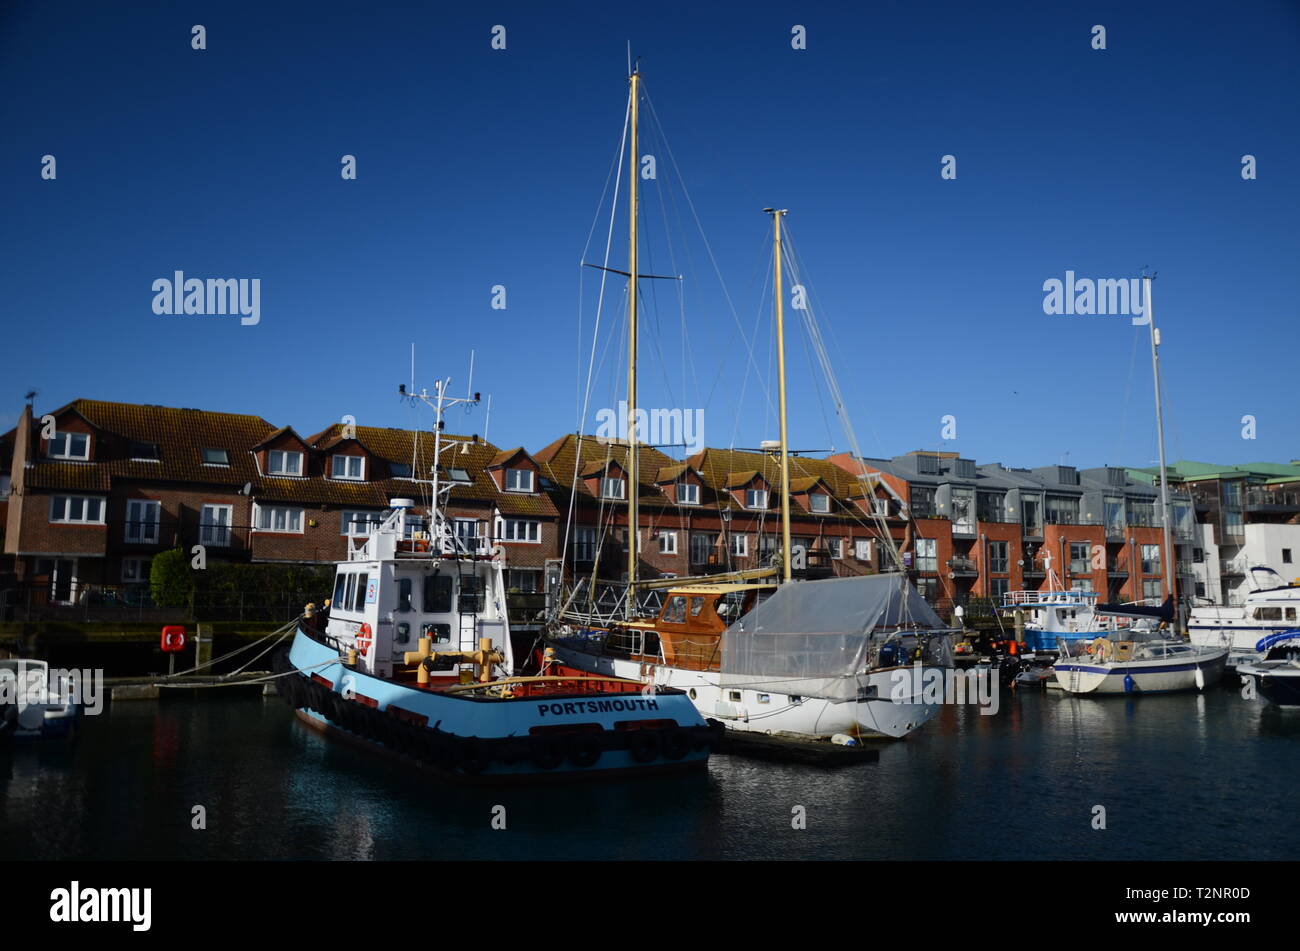 Barco de pesca en el puerto, industria pesquera británica Foto de stock